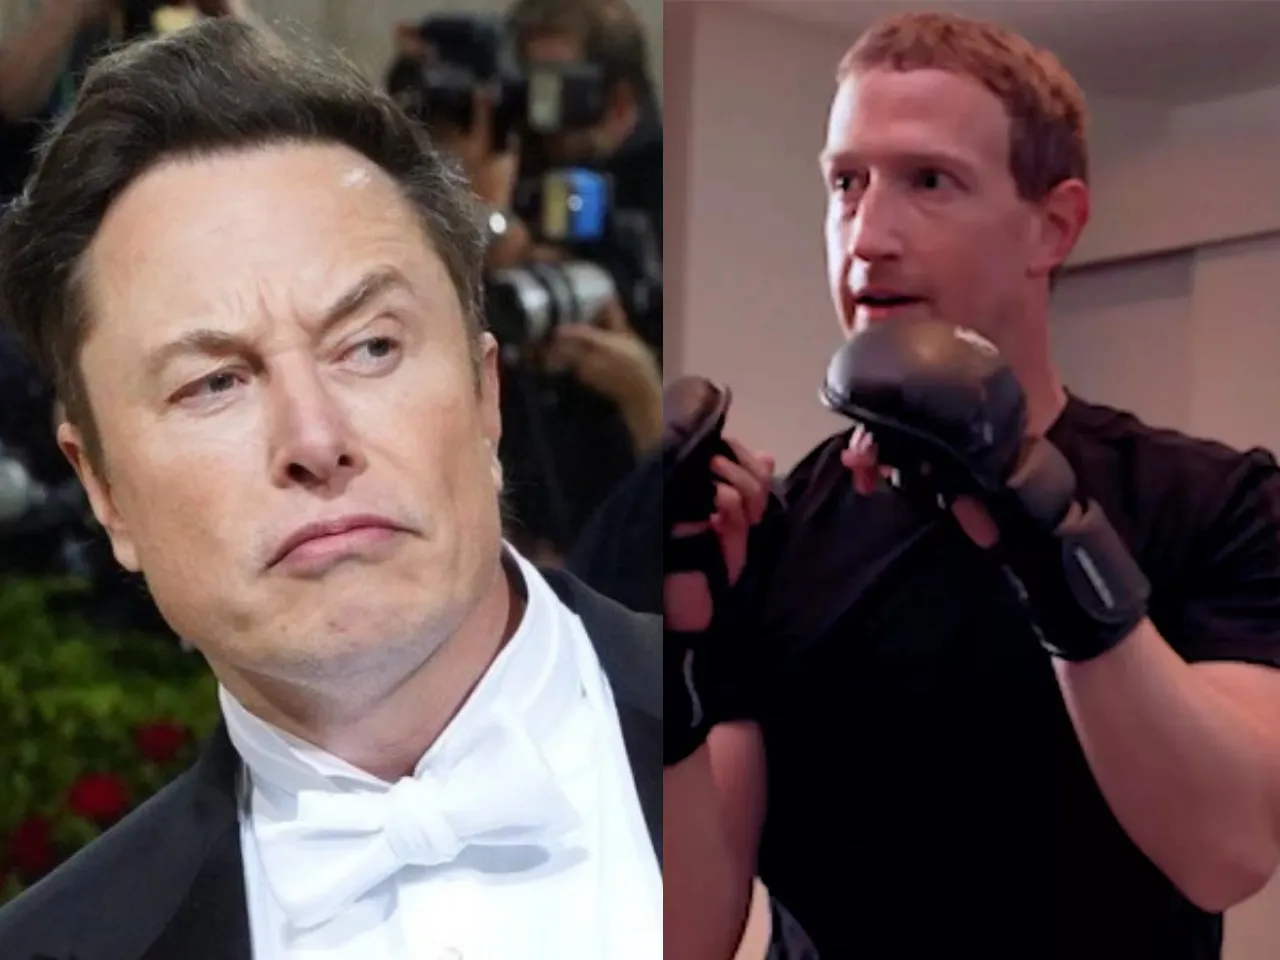 Elon Musk and Mark Zuckerbberg